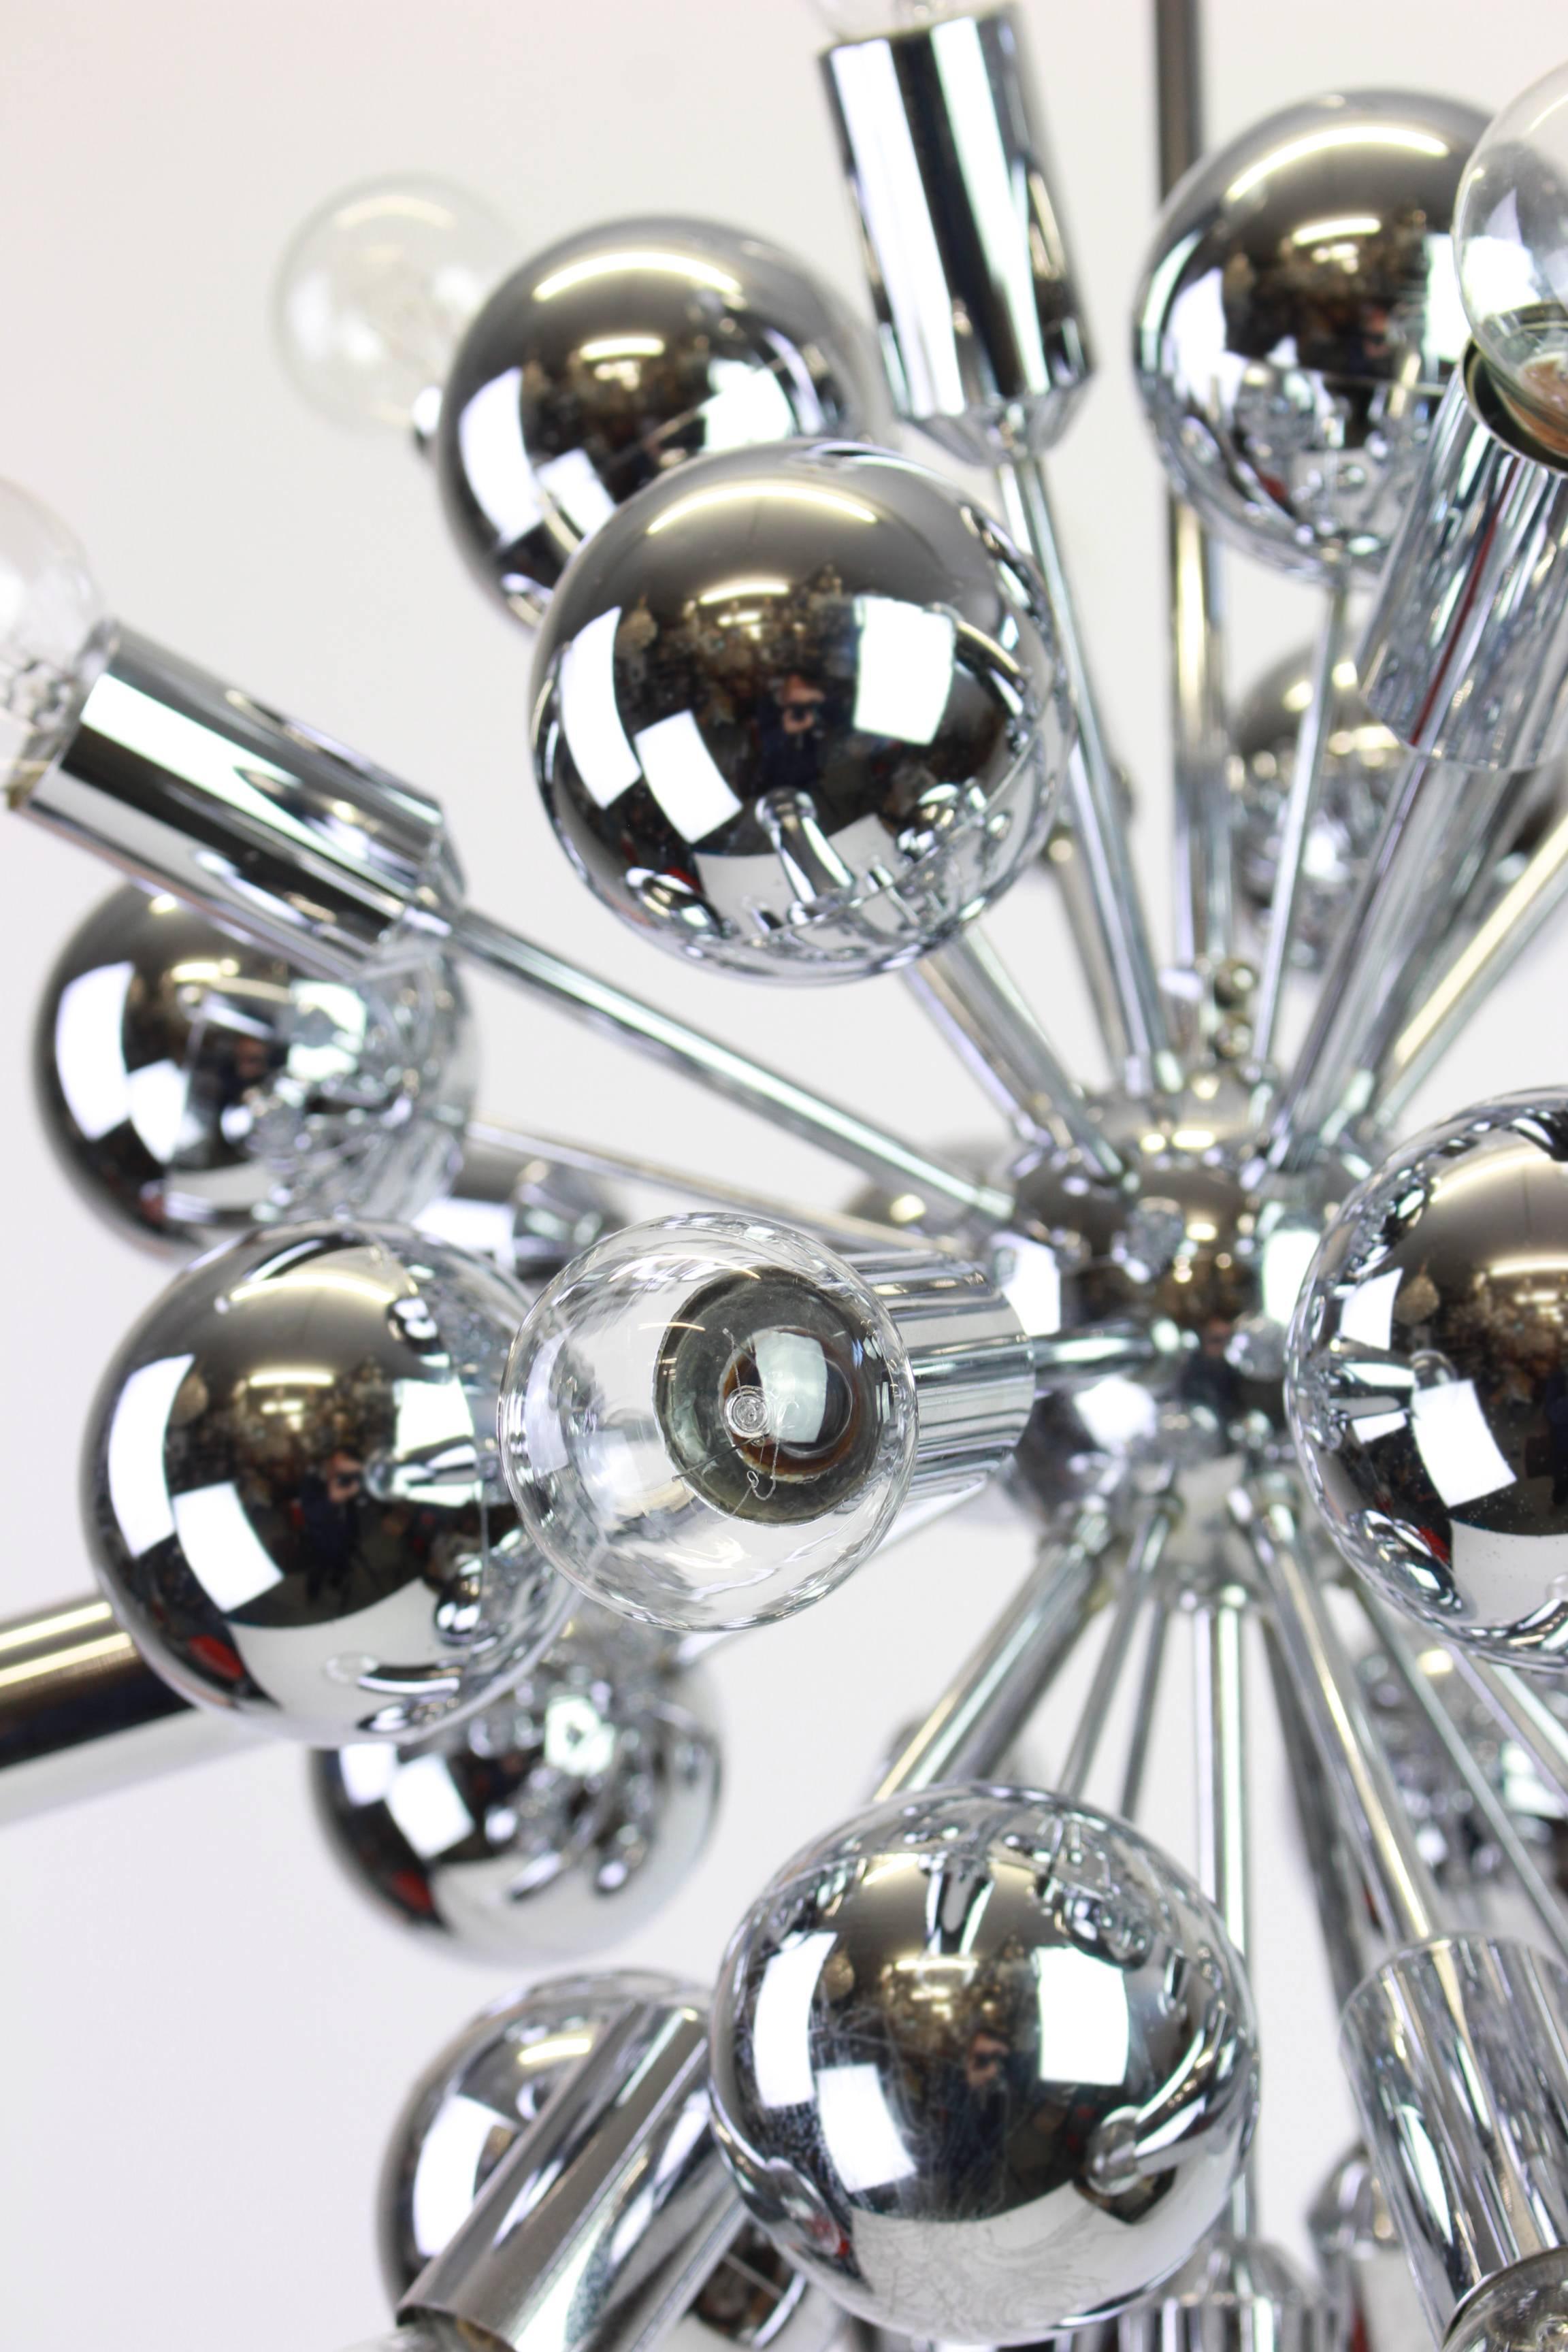 Exklusive silberne Sputnik-Pendelleuchte, entworfen von Cosack in den 1970er Jahren.

Fassungen: Er benötigt 21 x E14 Glühbirnen und funktioniert mit einer Spannung von 110 bis 240 Volt.
Abmessungen: 
Durchmesser: 16